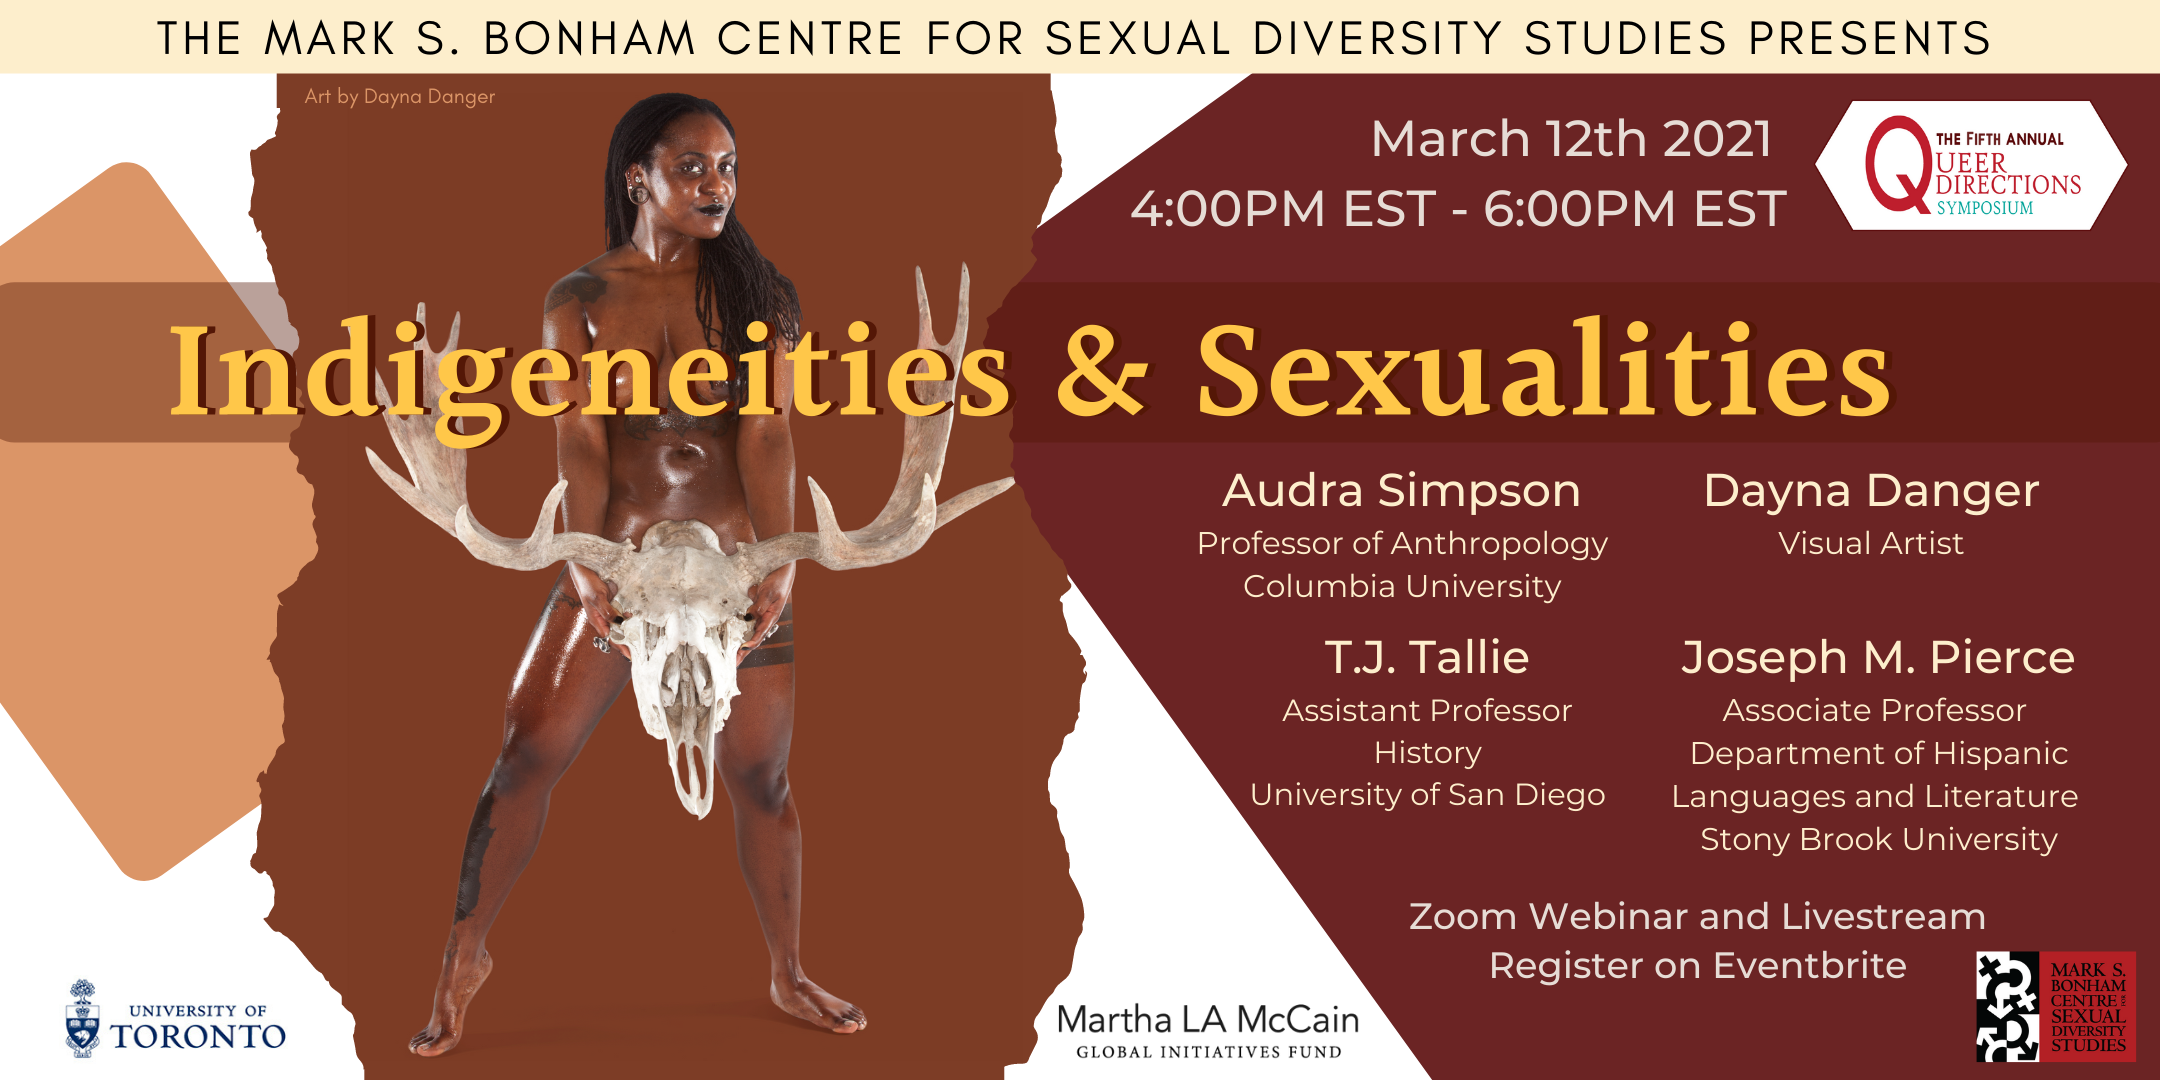 Queer Directions Symposium: Indigeneities & Sexualities